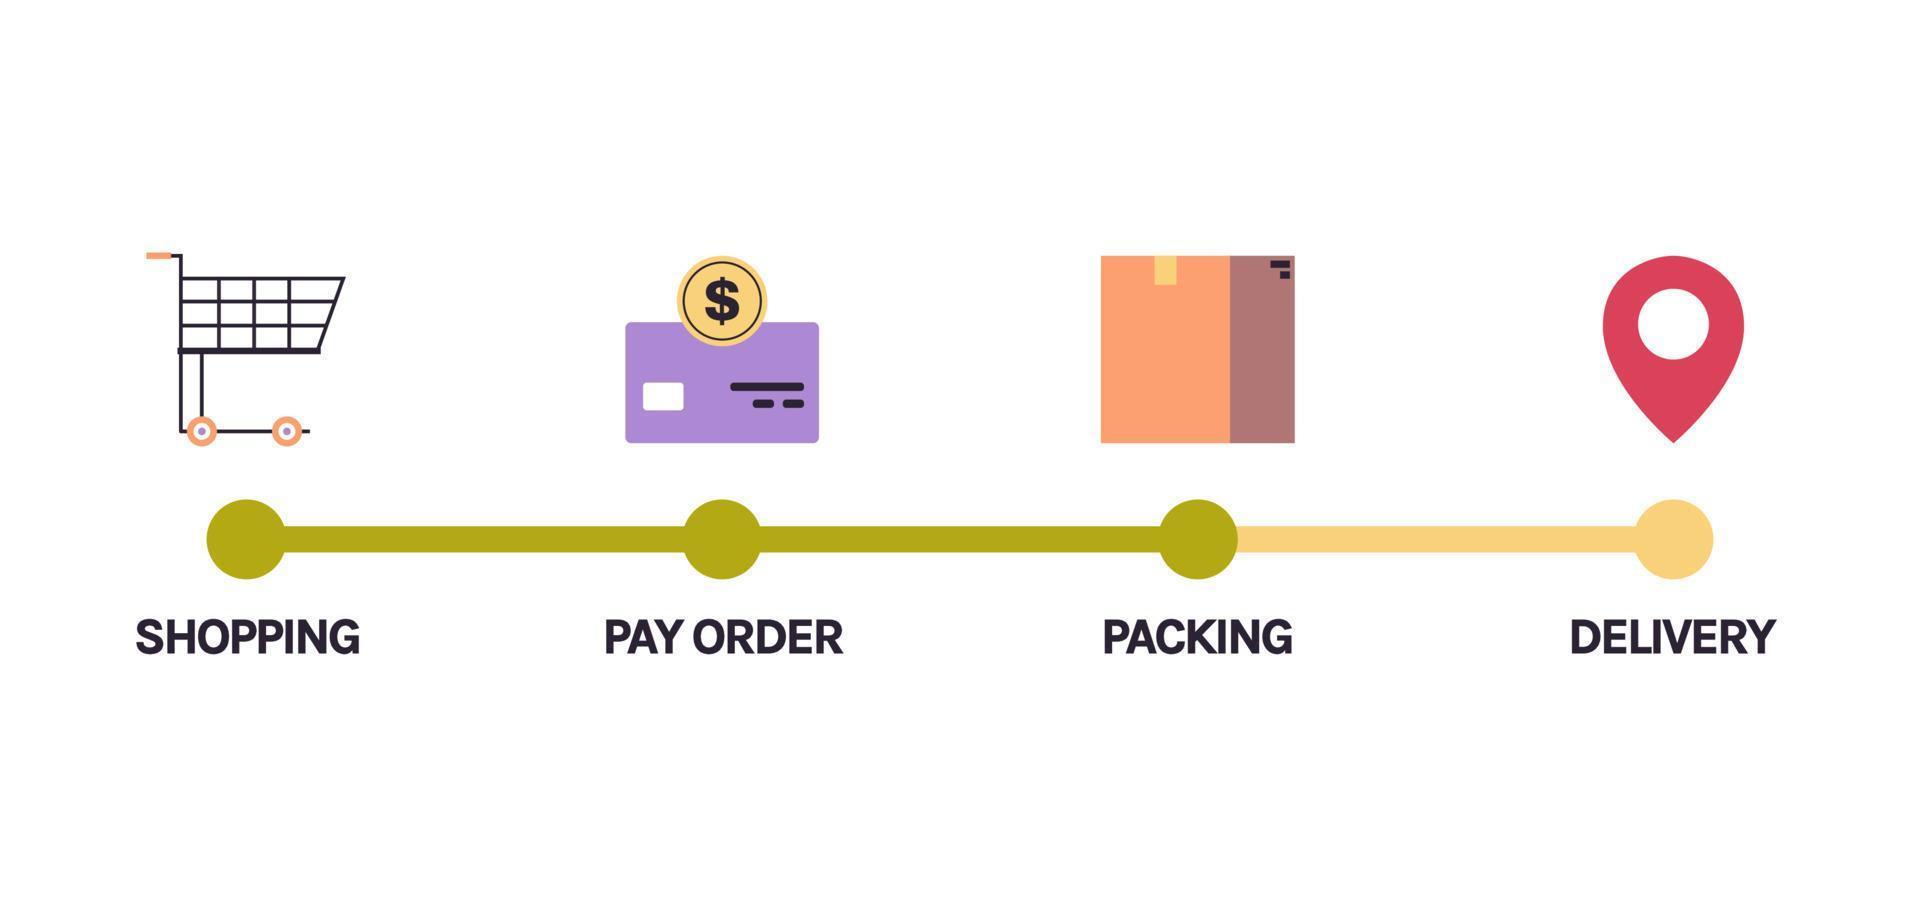 estágios infográficos de compras on-line e entrega de mercadorias, ilustração em vetor plana de conceito de status de pedido de rastreamento de escala.